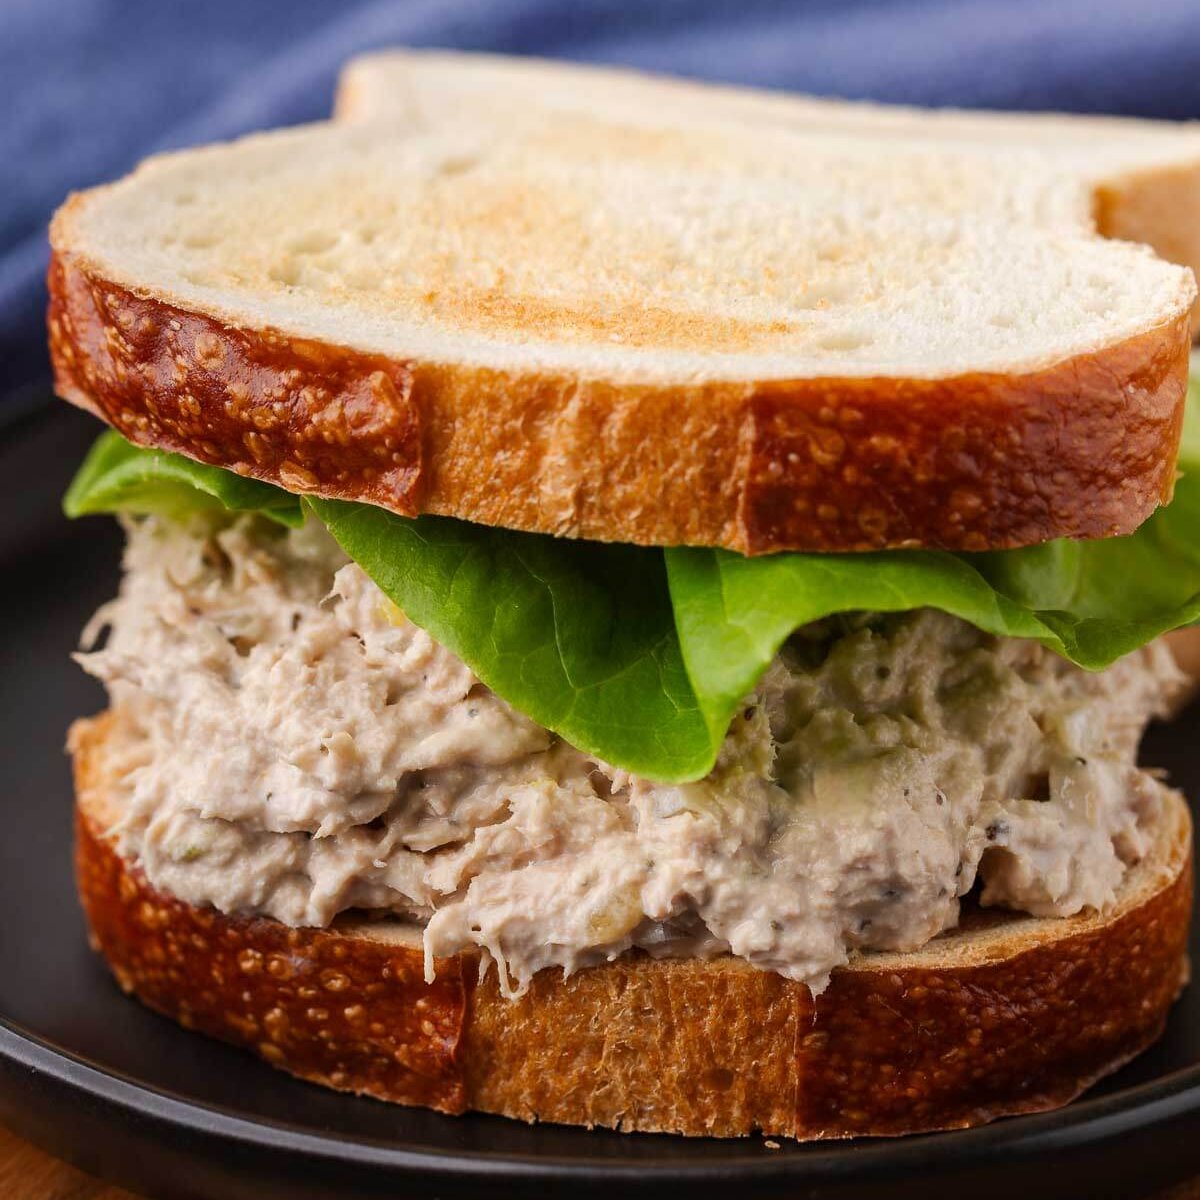 Real New York Deli Tuna Salad + The Best Tuna Melt! Full Recipe: durl.ca/hseox